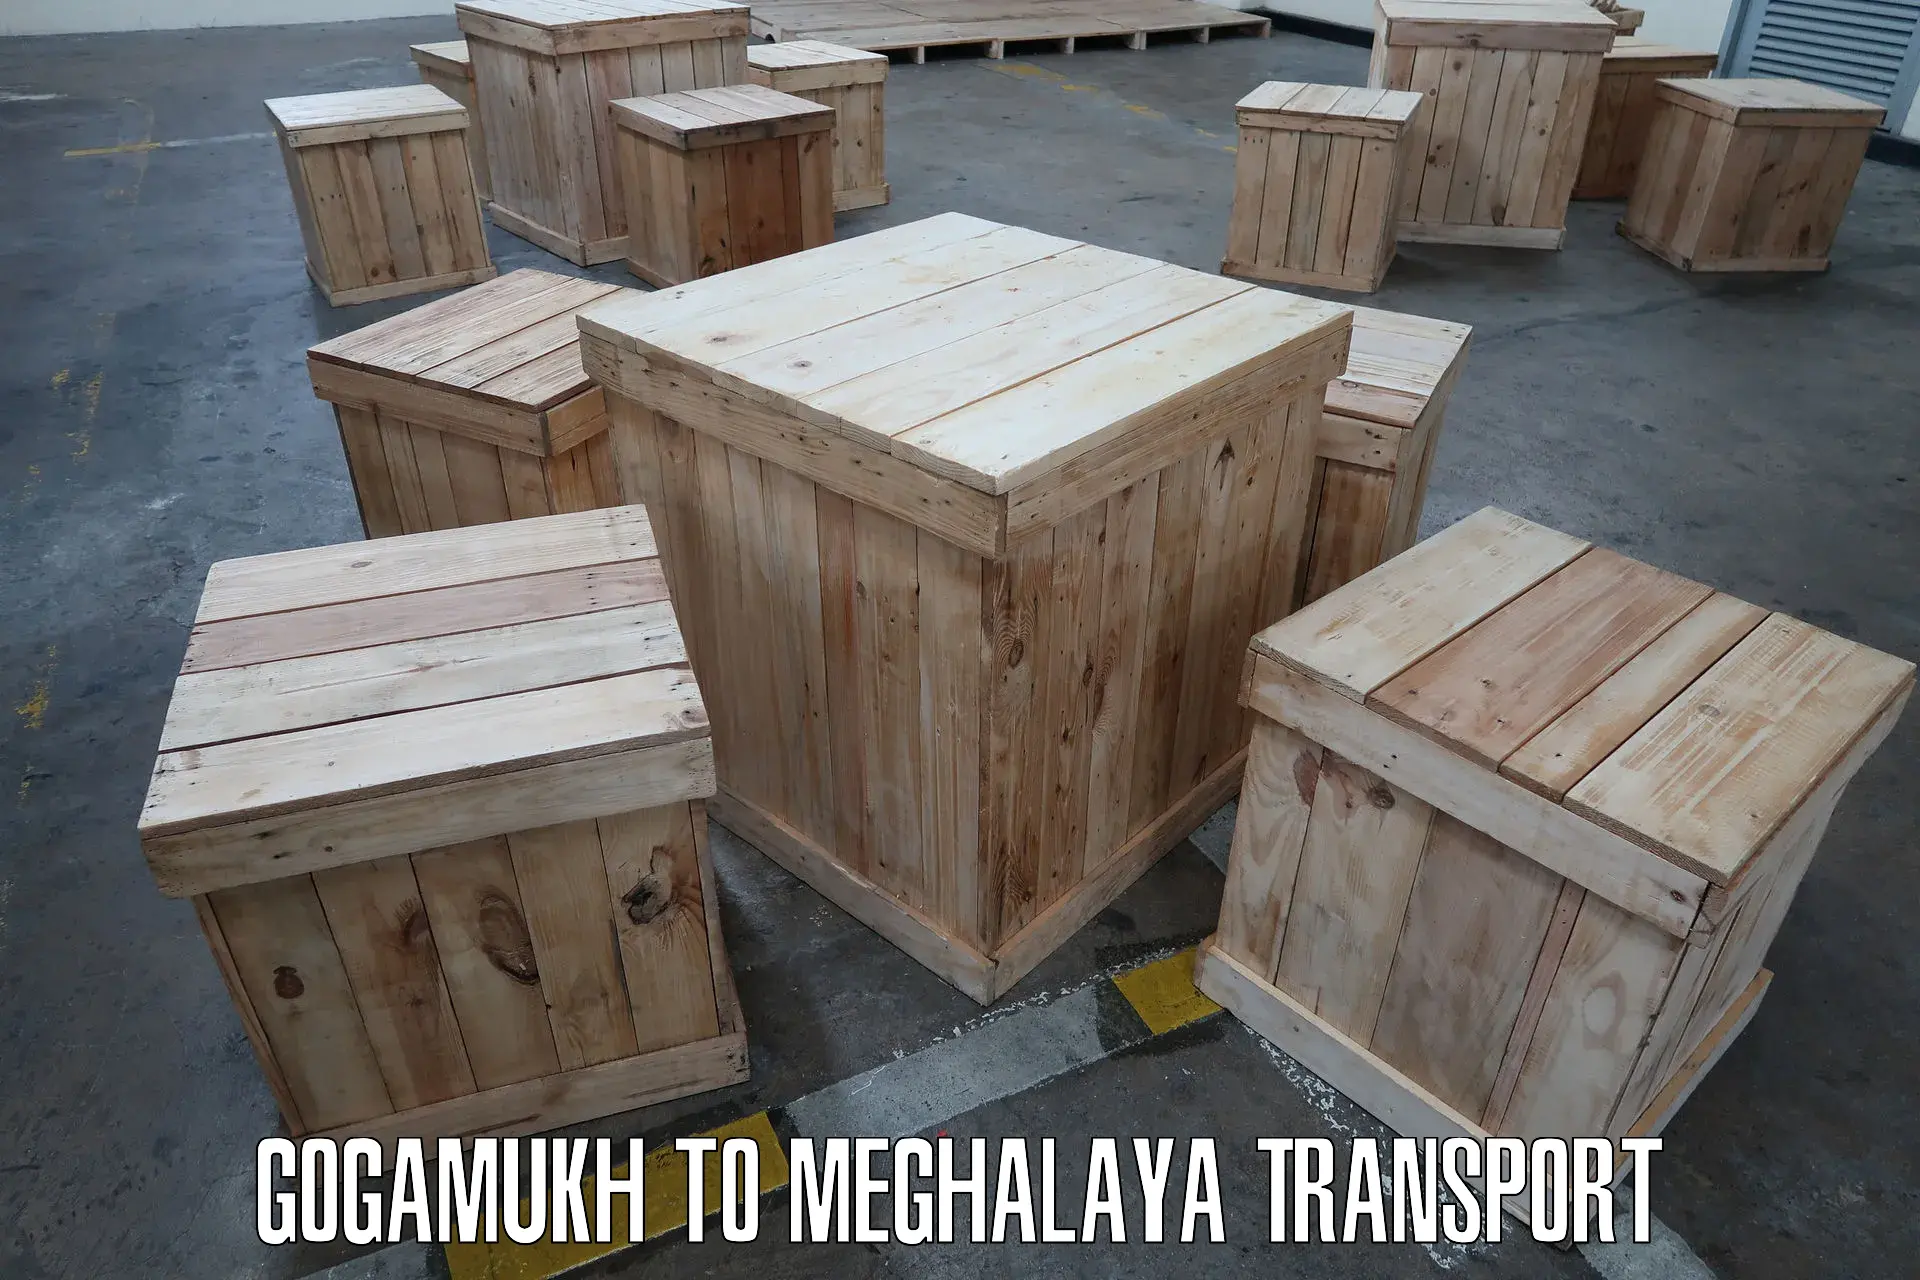 Domestic goods transportation services Gogamukh to Meghalaya